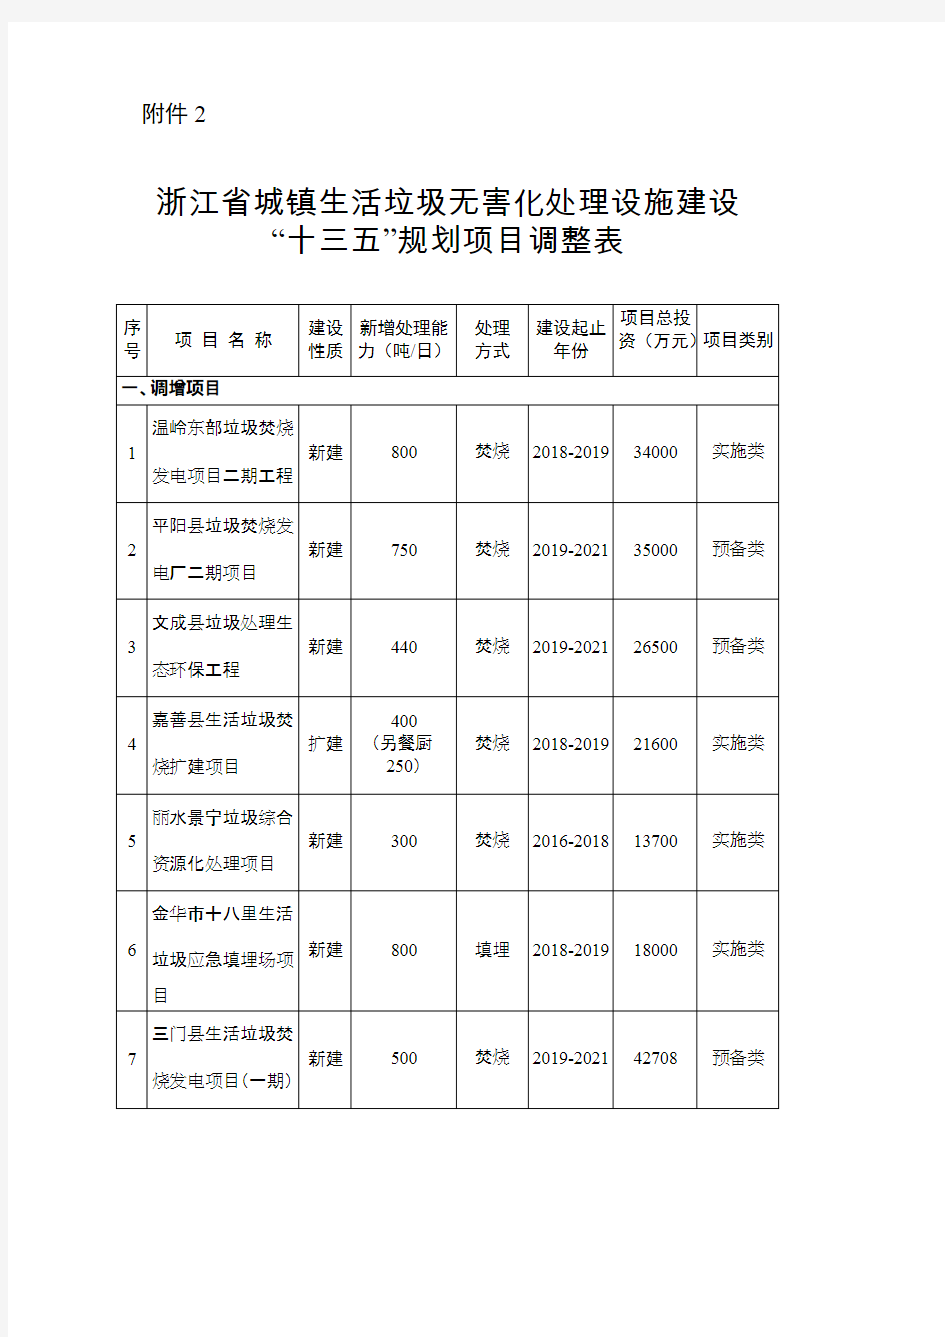 浙江省城镇生活垃圾无害化处理设施建设十三五规划项目调整表